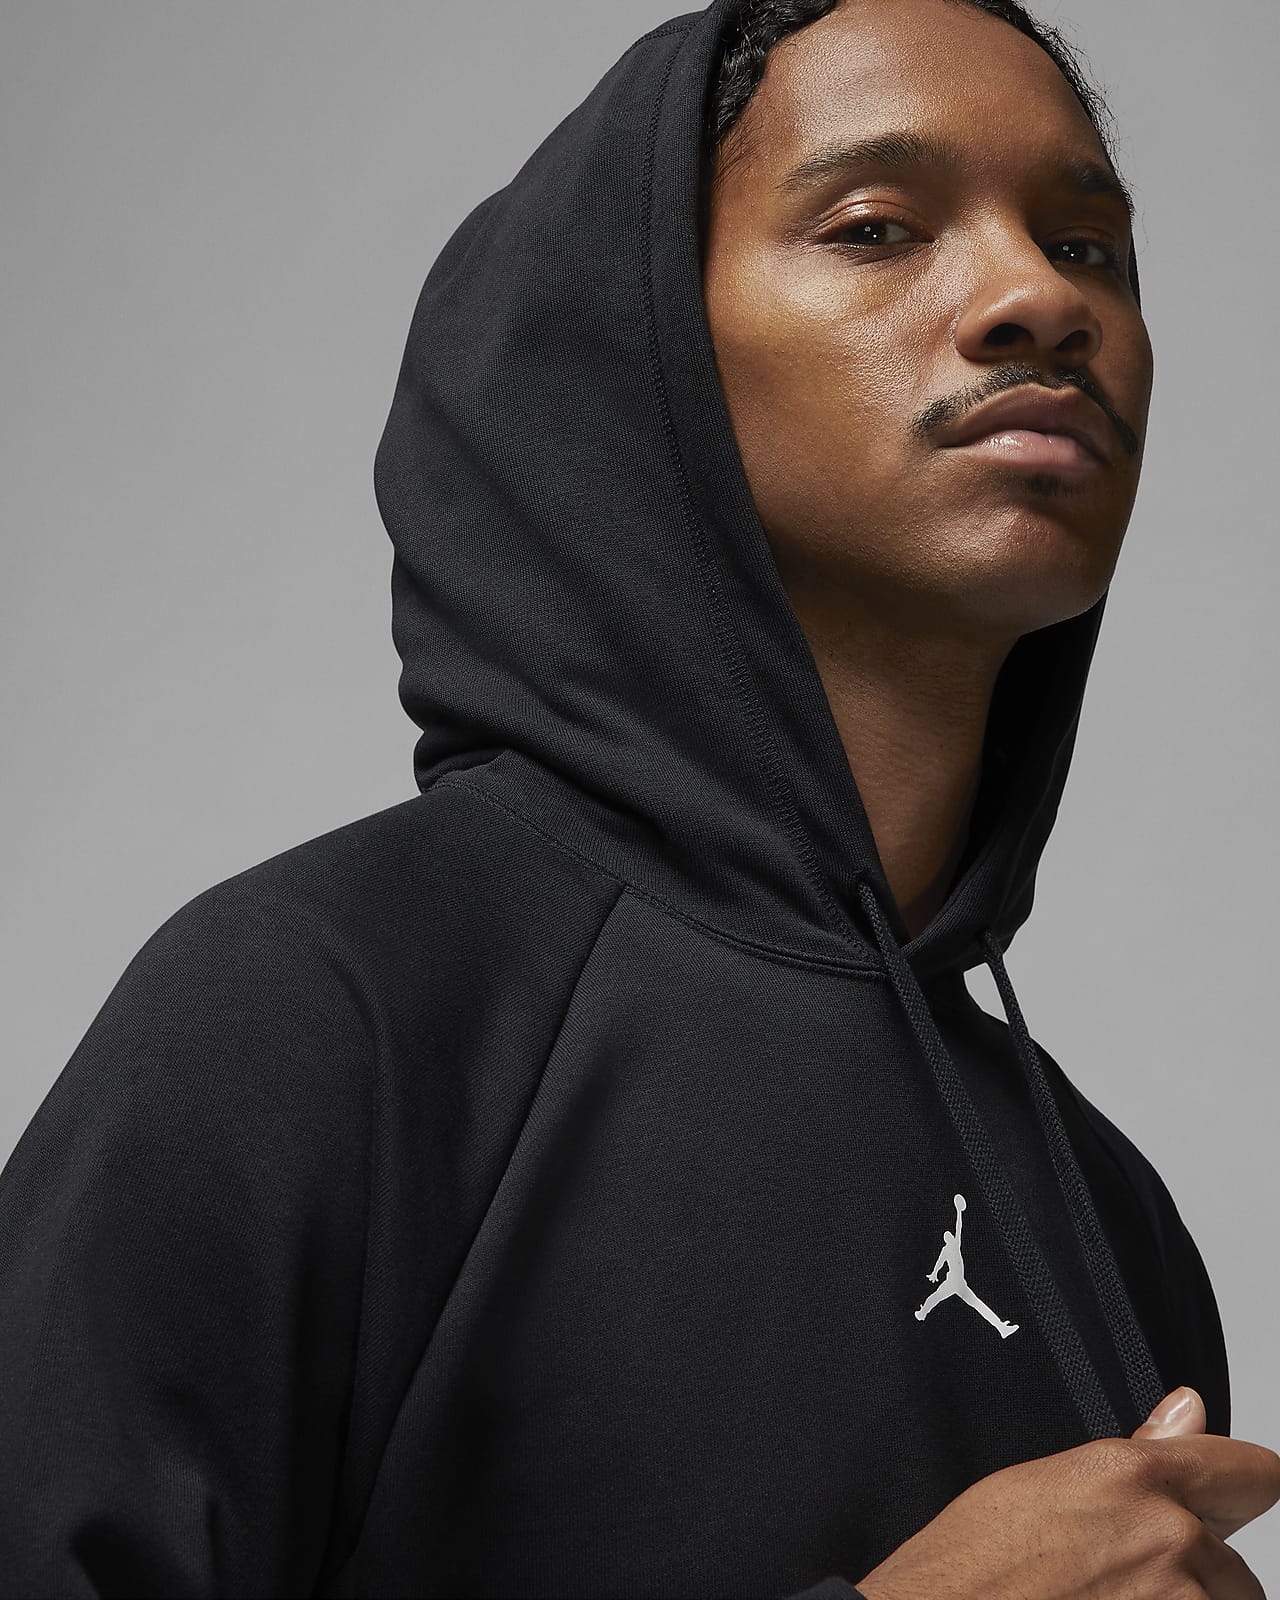 Socialistisch Dialoog heb vertrouwen Jordan Dri-FIT Sport Crossover Men's Fleece Hoodie. Nike.com